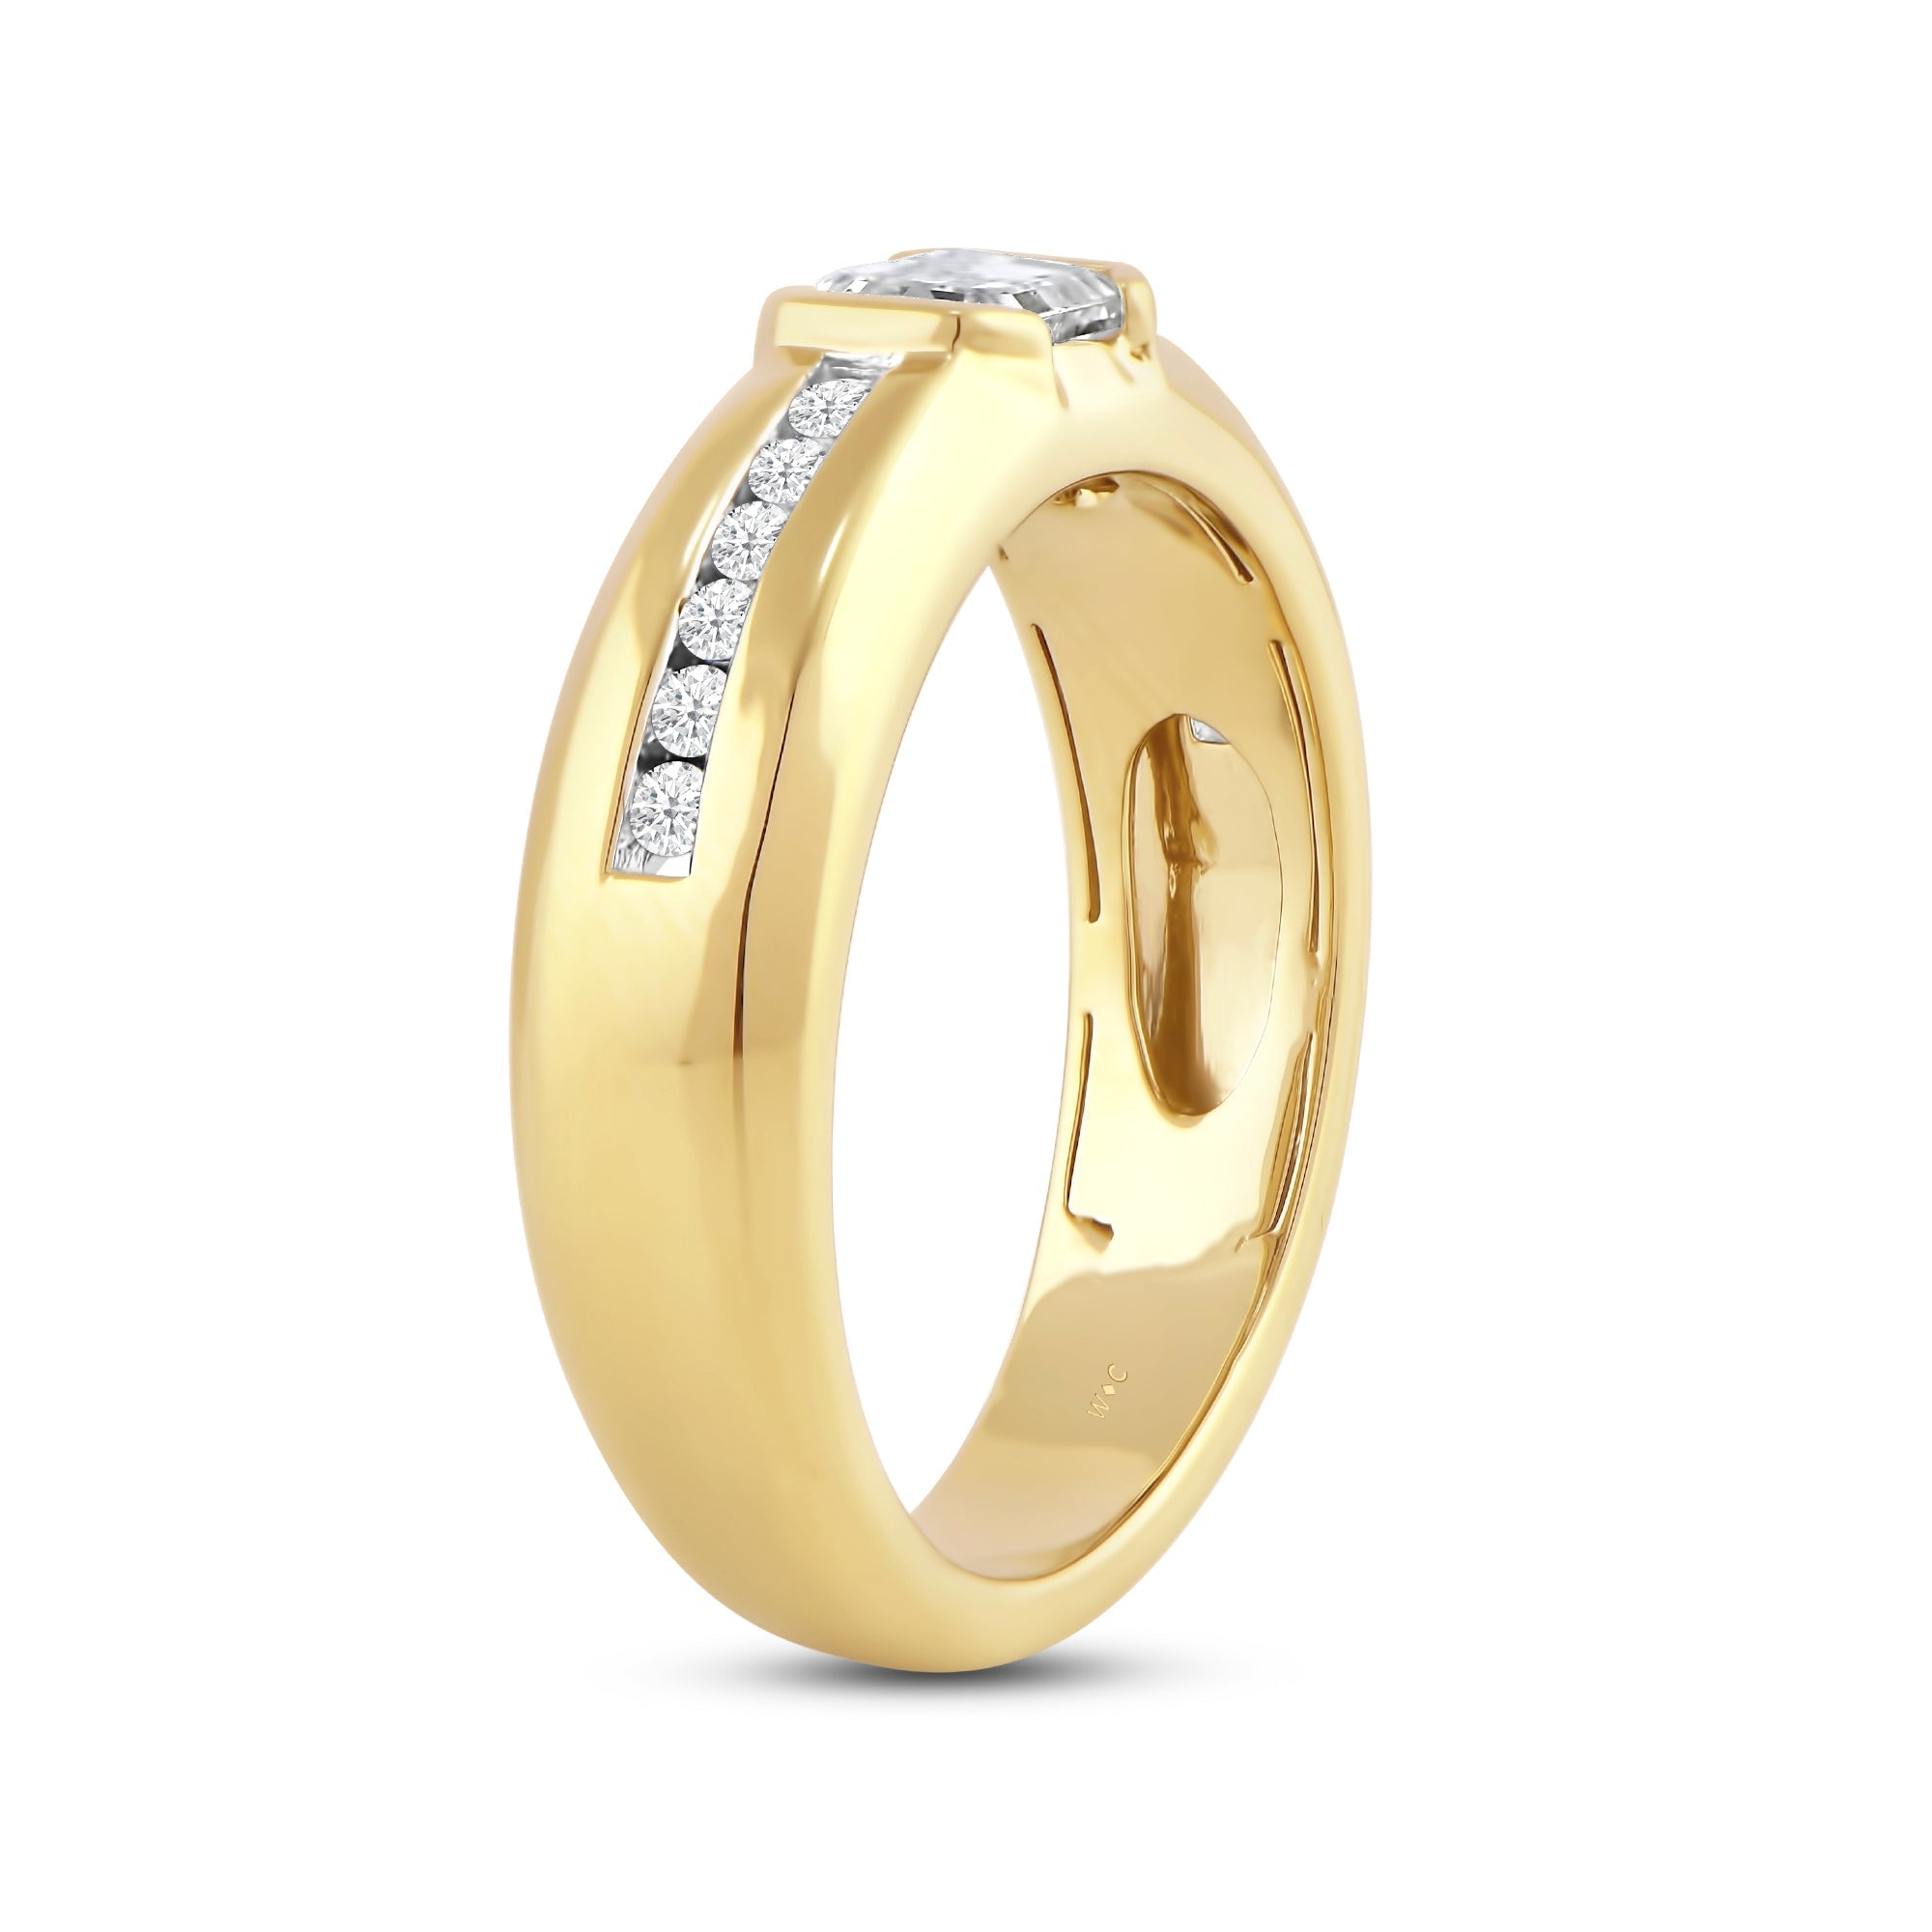 Buy 22K Plain Gold Men Fancy Ring 93VB2395 Online from Vaibhav Jewellers